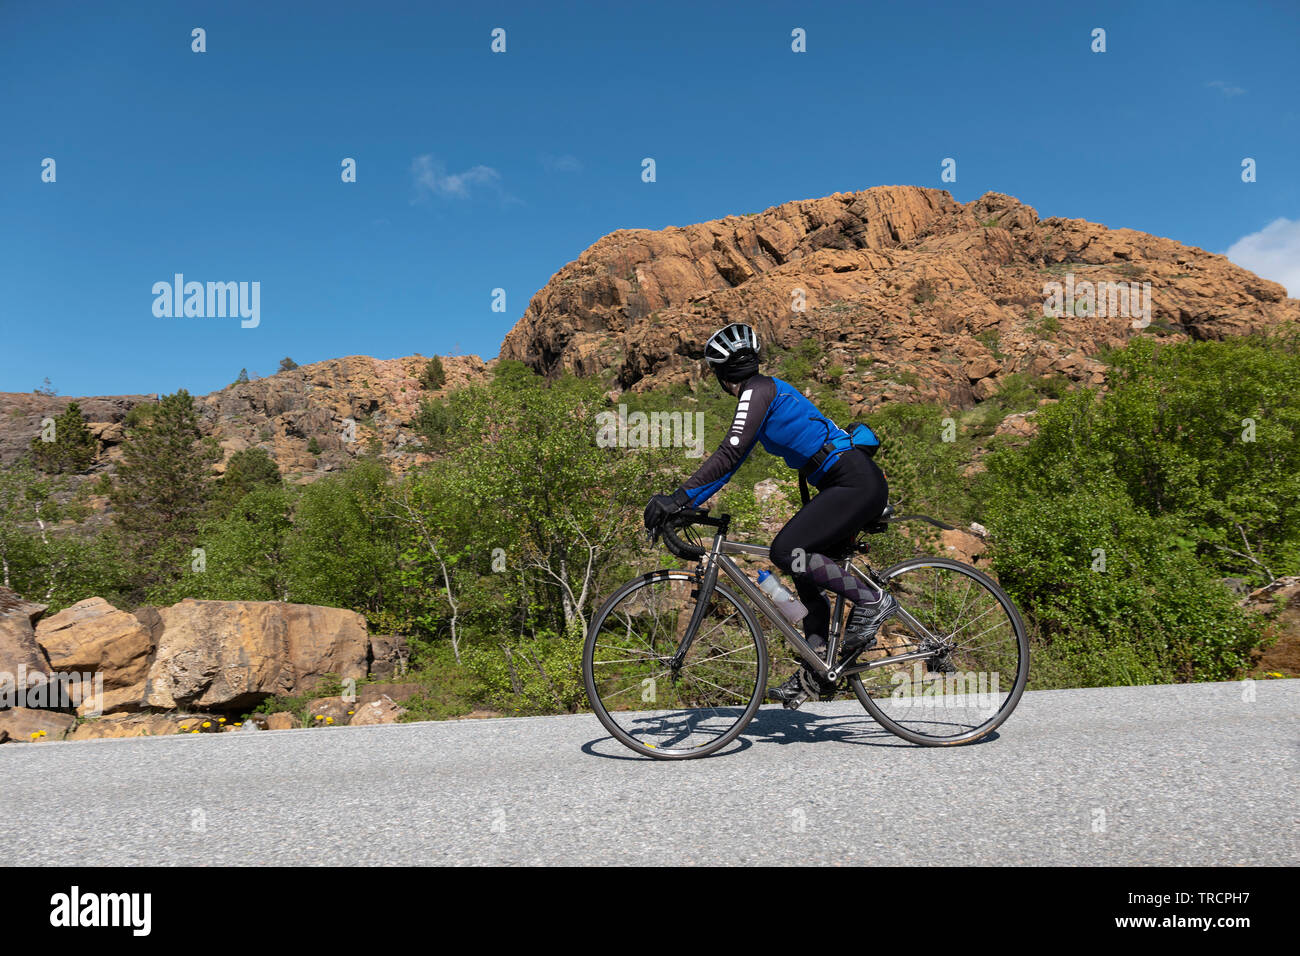 Cycliste féminine sur l'île, la Norvège Leka Banque D'Images